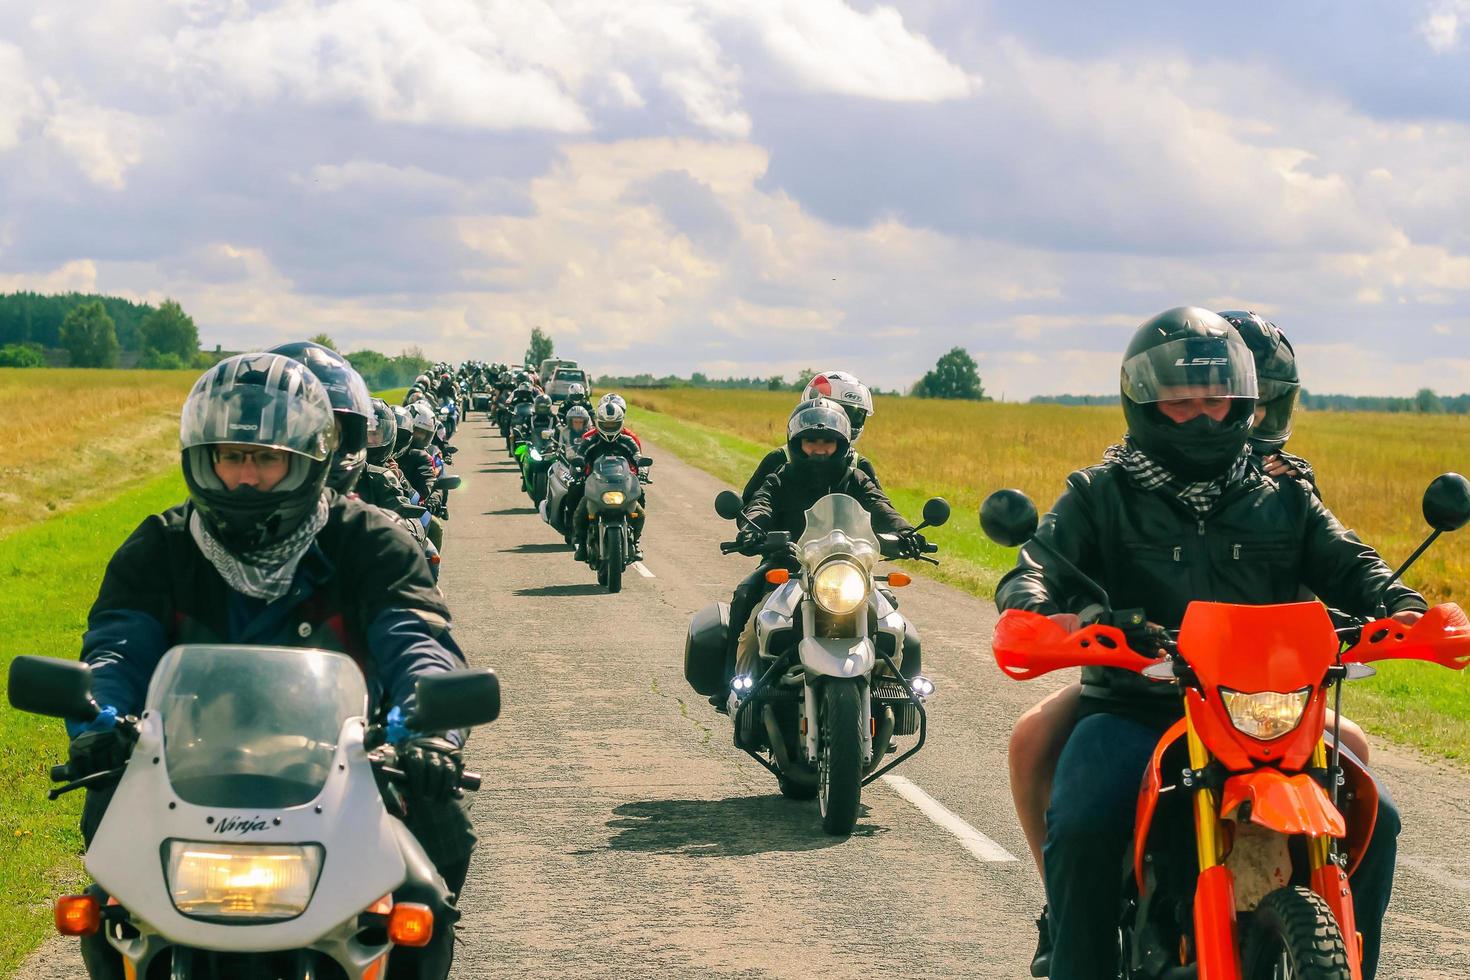 groupe de motocyclistes monte sur asphalte pays route sur été ensoleillé journée. parade de motocyclettes. photo